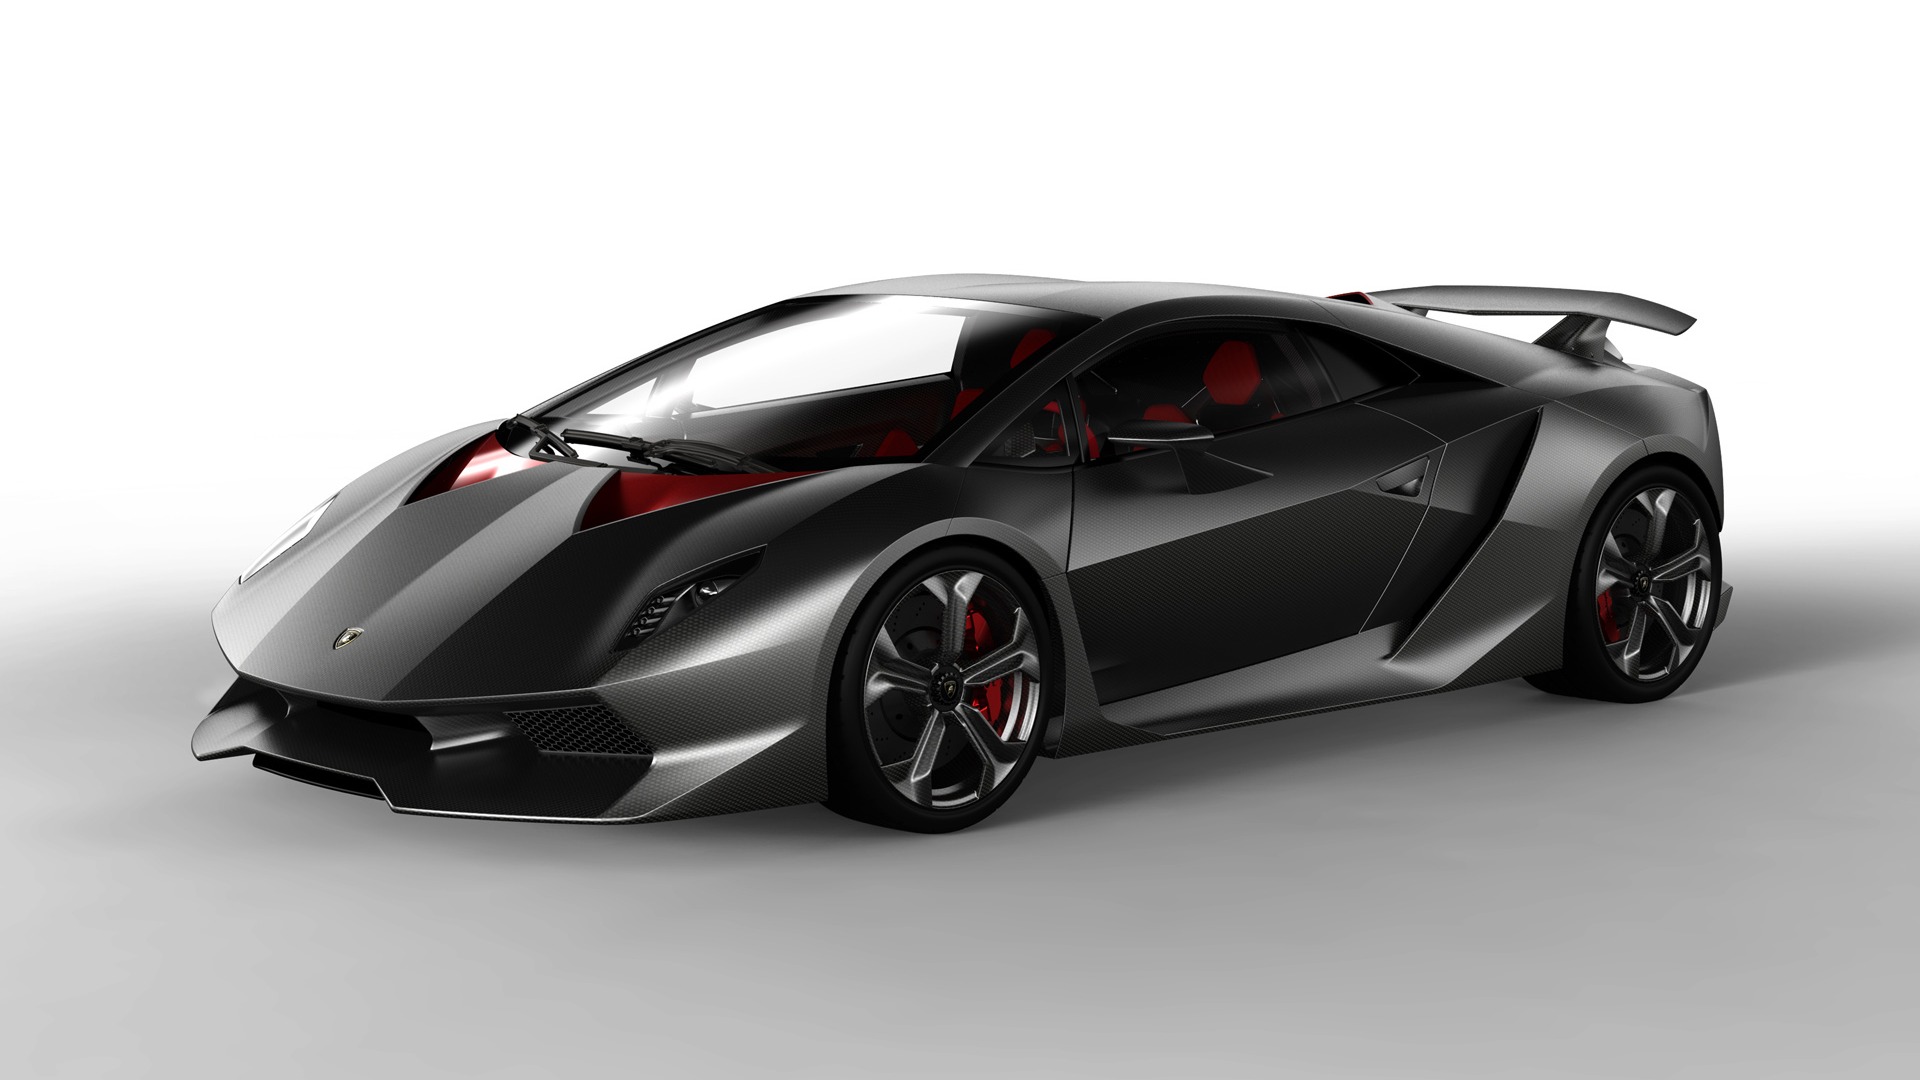 Lamborghini Concept Car Sesto Elemento - 2010 HD Wallpaper #1 - 1920x1080